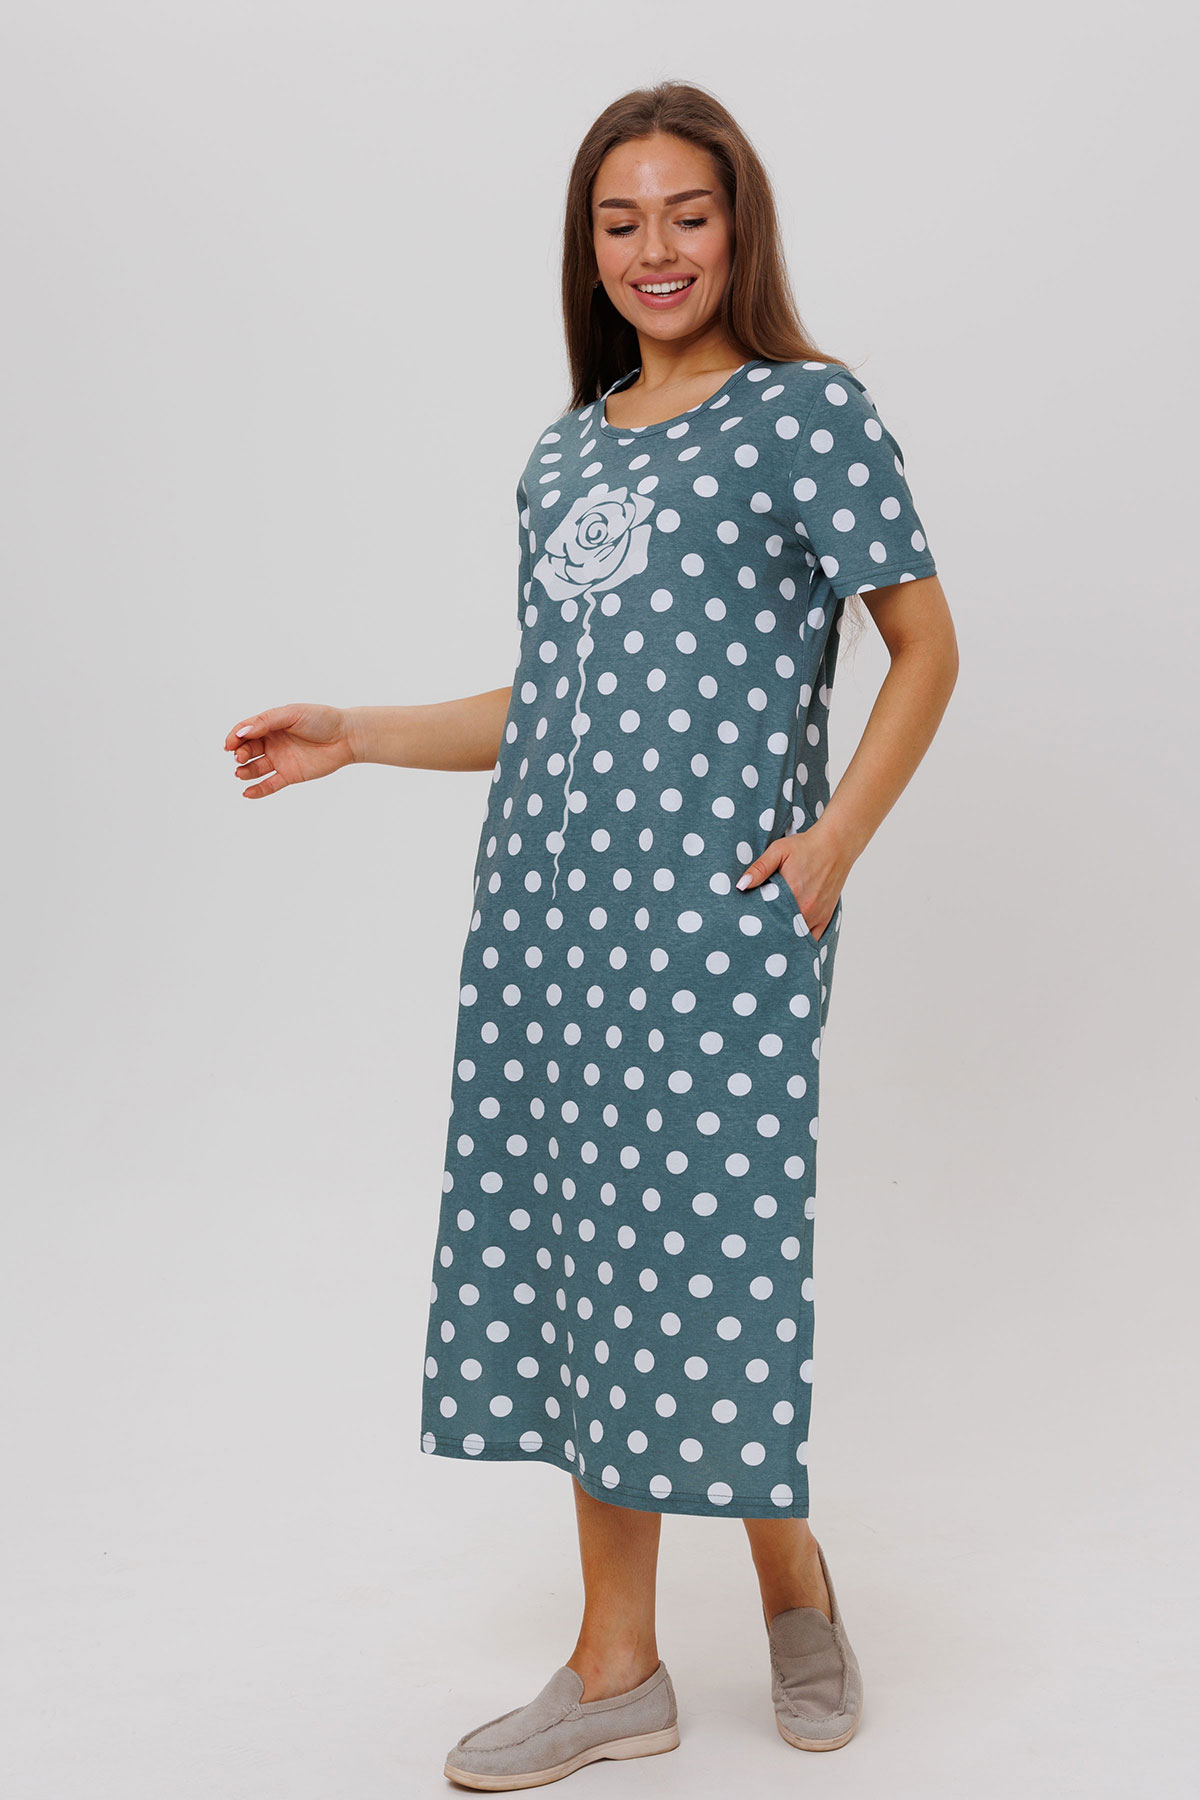 Жен. платье повседневное арт. 23-0545 Зеленый р. 54 Моделлини, размер 54 - фото 3